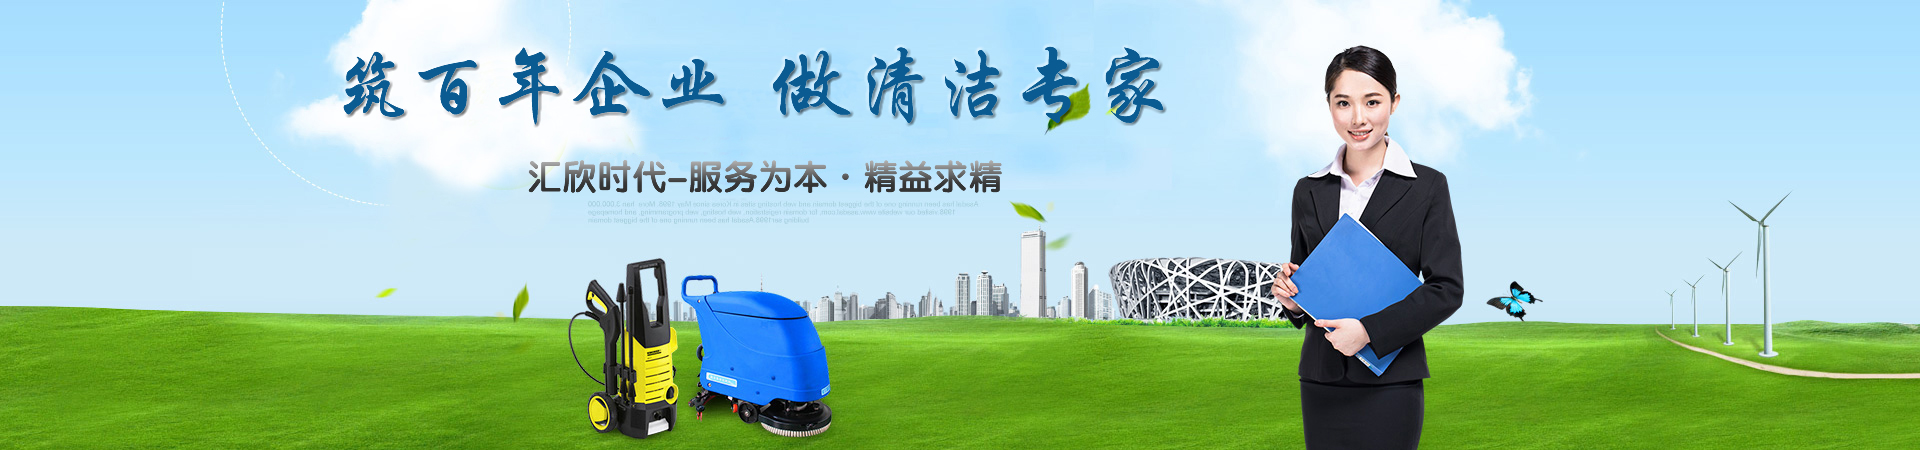 北京市场保洁公司